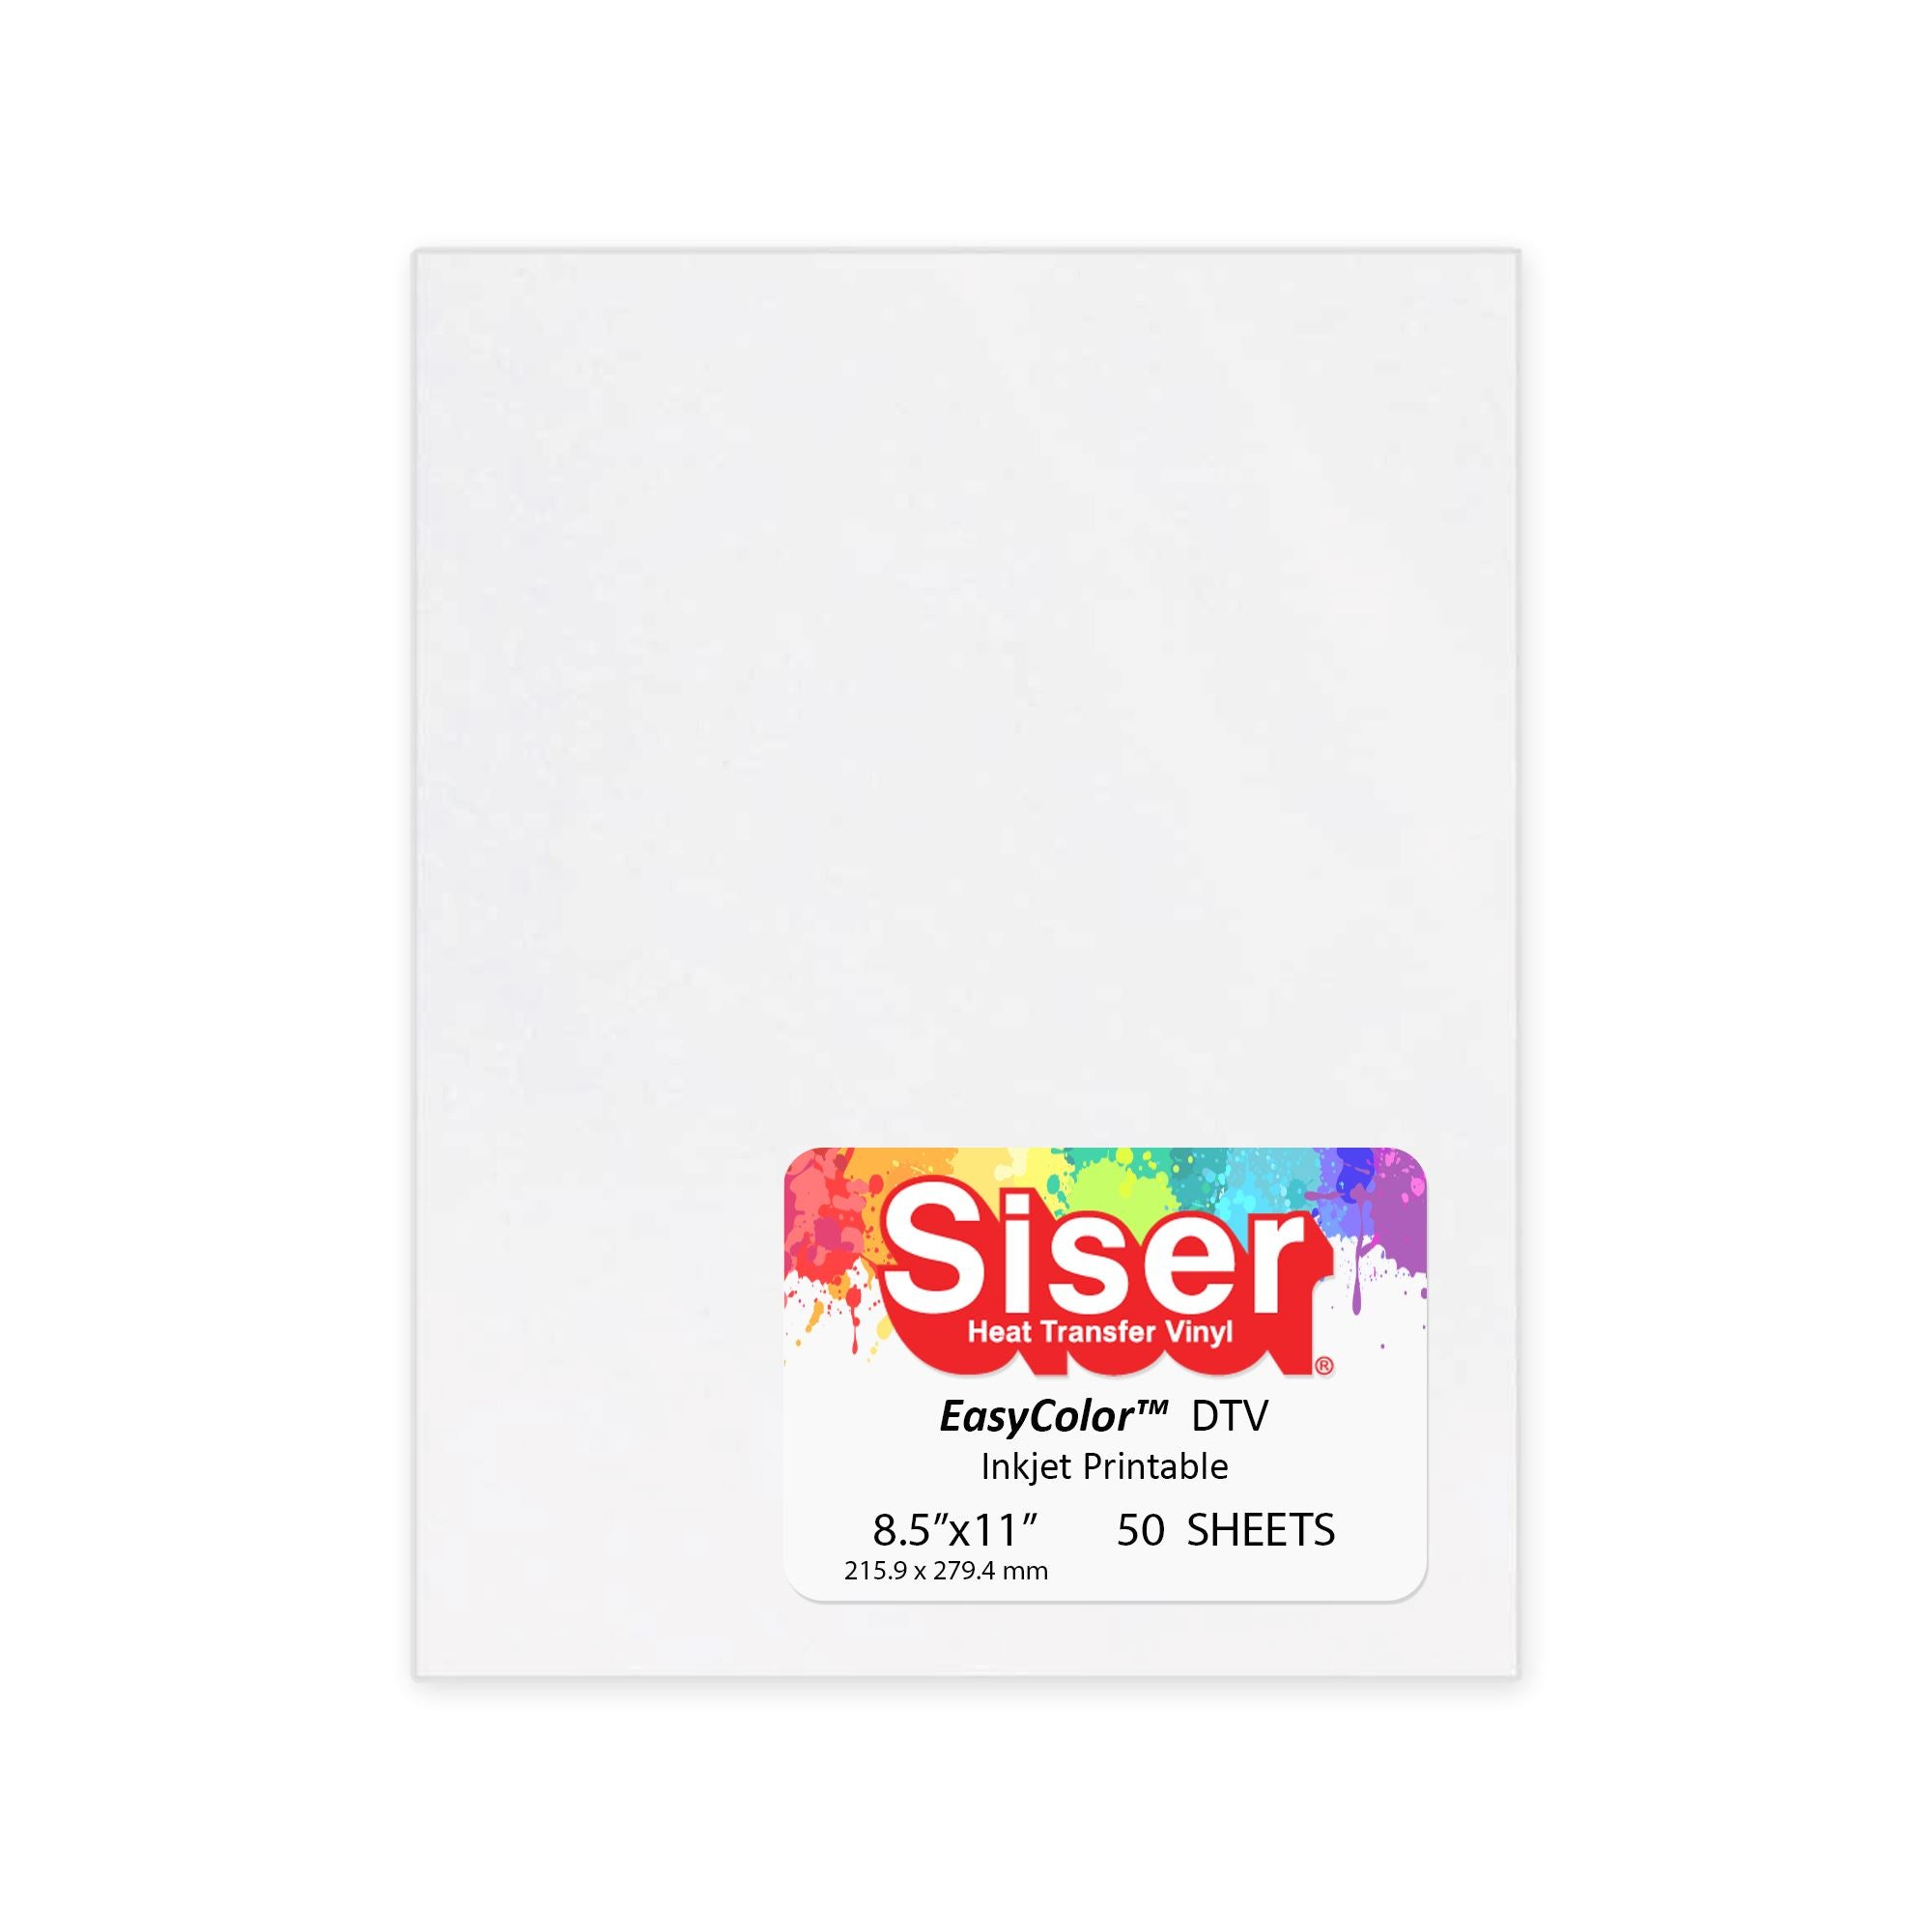 Siser EasySubli HTV - 8.4x11 sheets - 50 PACK